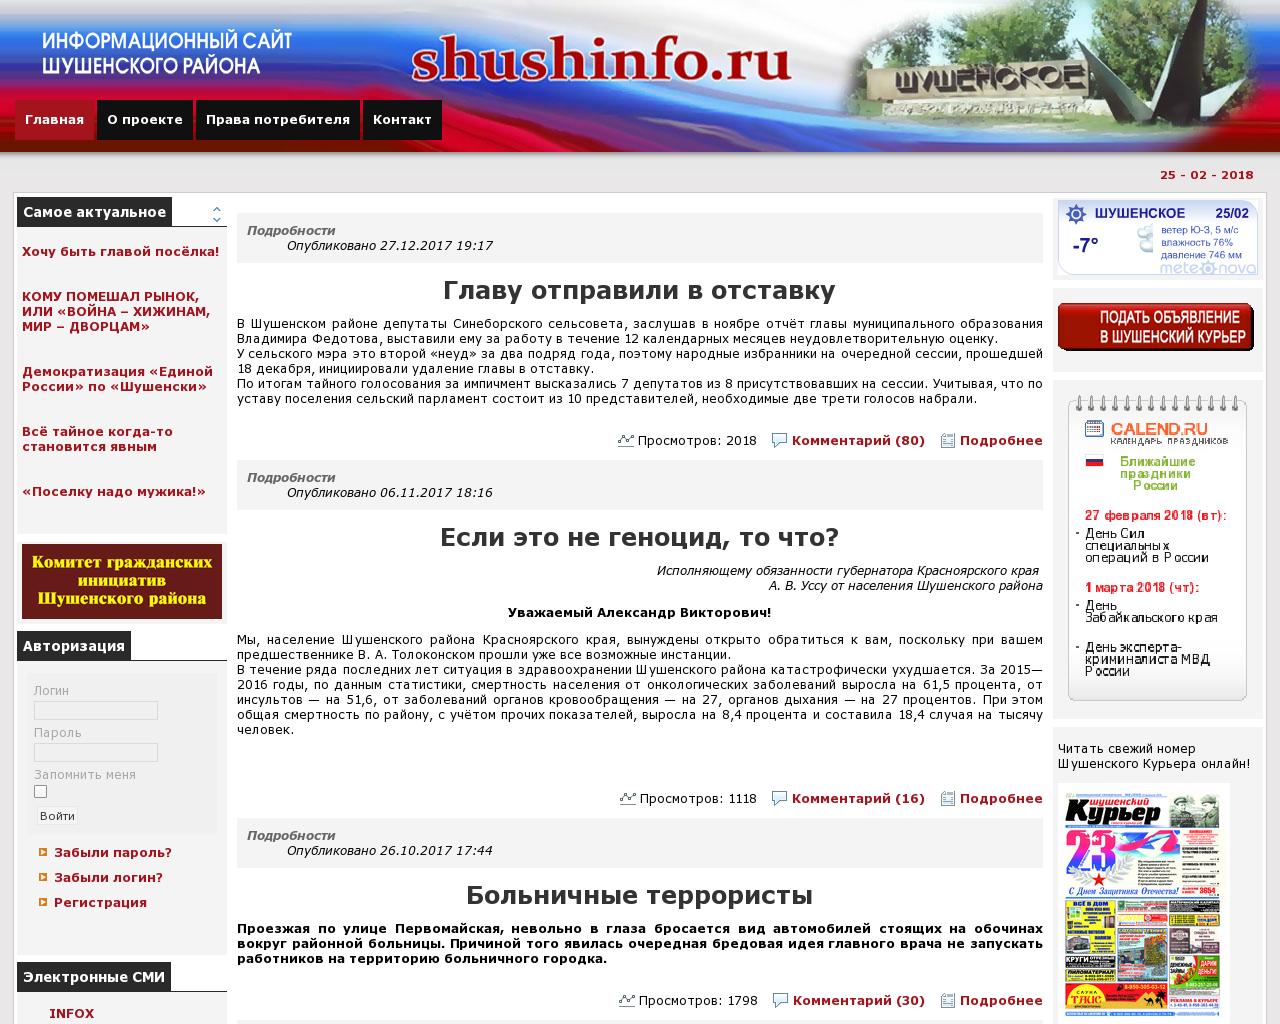 Изображение сайта shushinfo.ru в разрешении 1280x1024